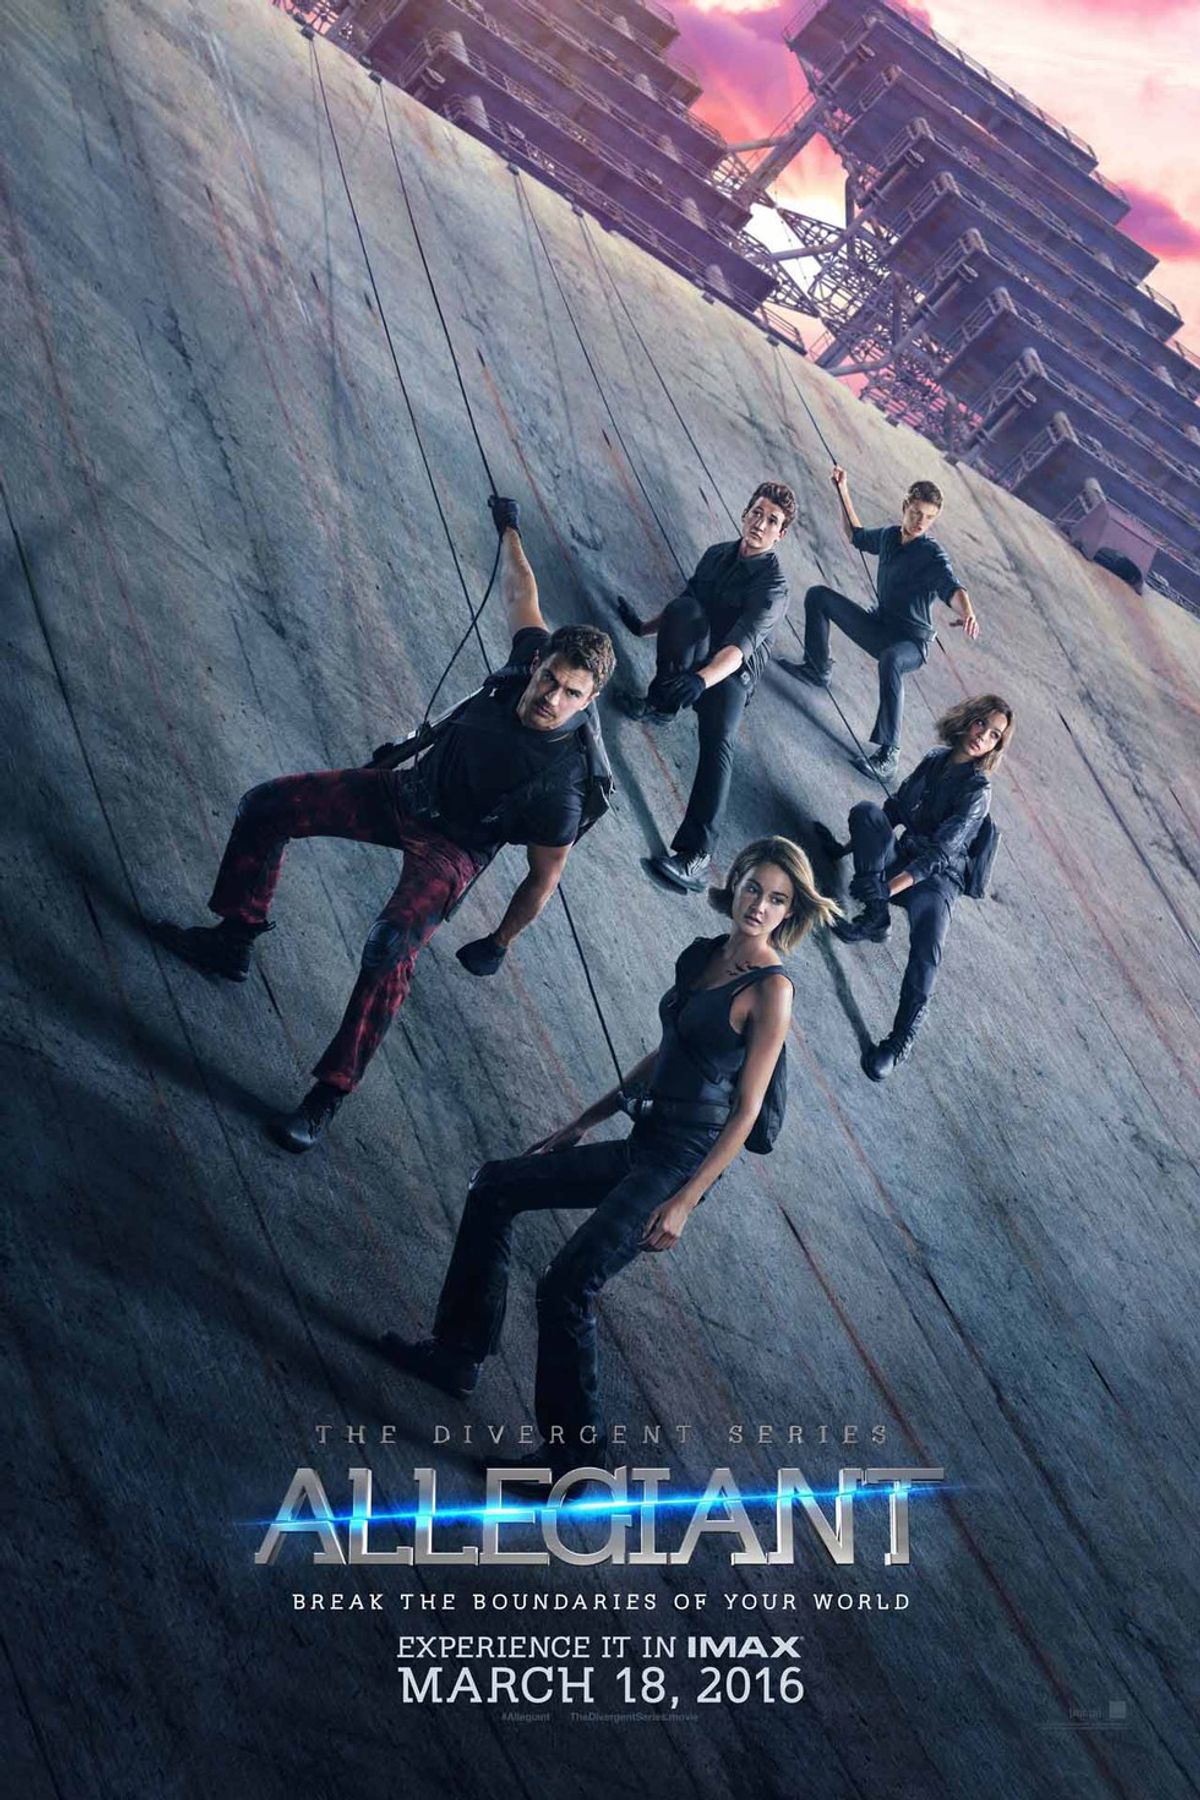 The 'Divergent' Series Last Film Won't Return To Big Screen